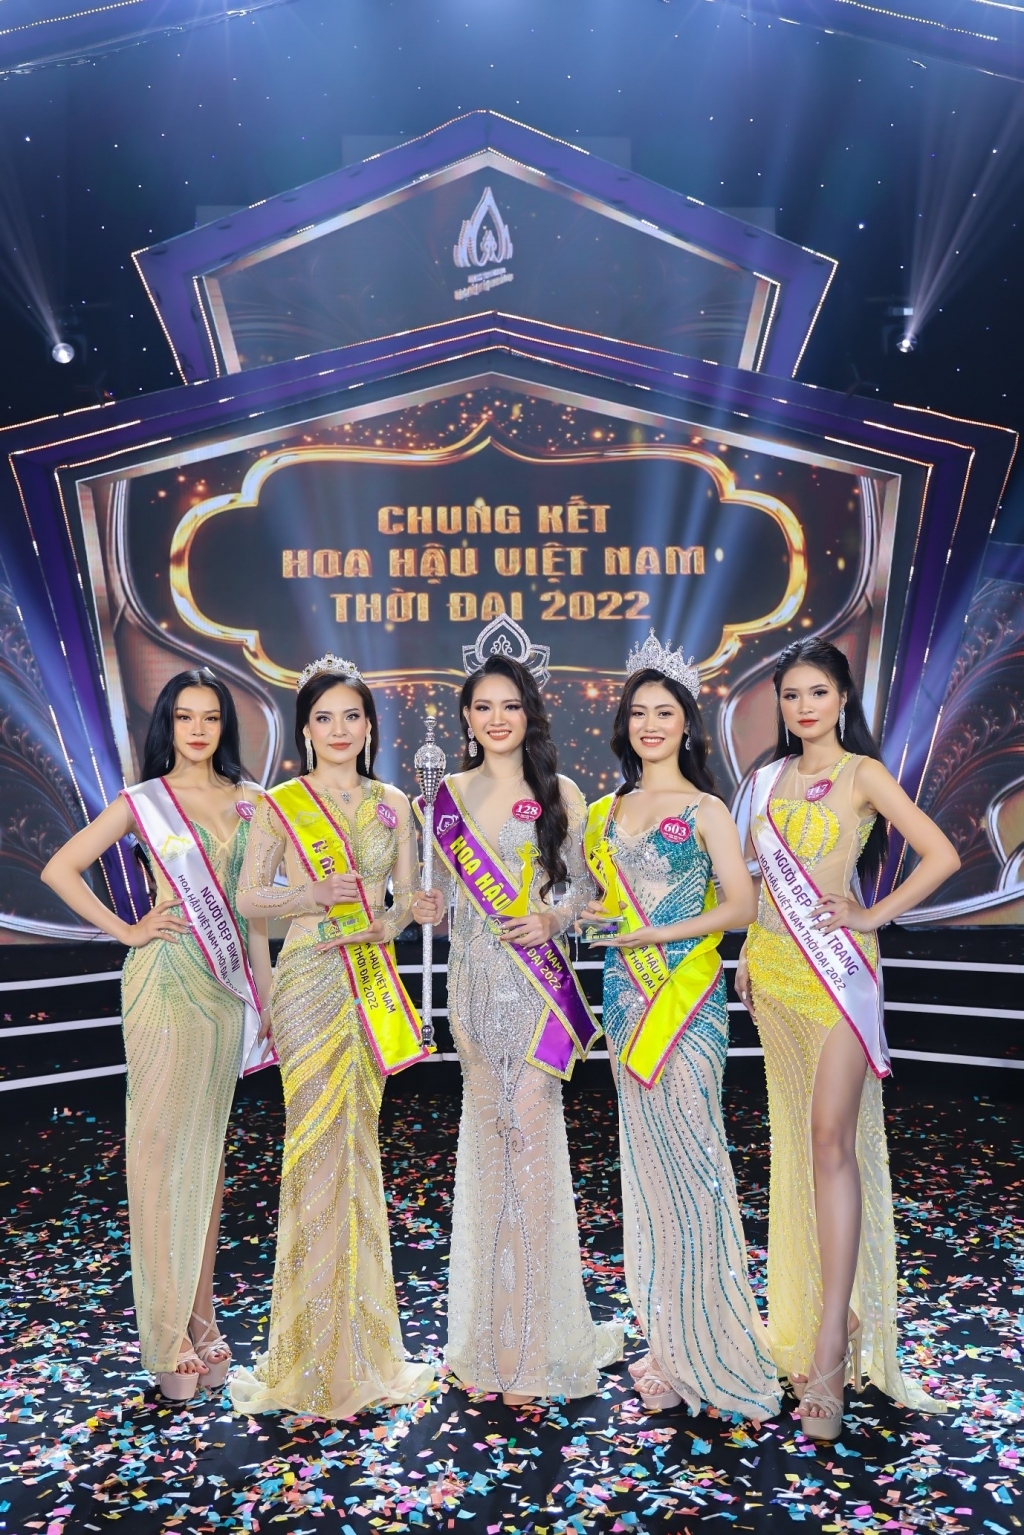 Nữ sinh Đại học Quốc gia Hà Nội Nguyễn Mai Anh đăng quang 'Hoa hậu Việt Nam thời đại 2022'